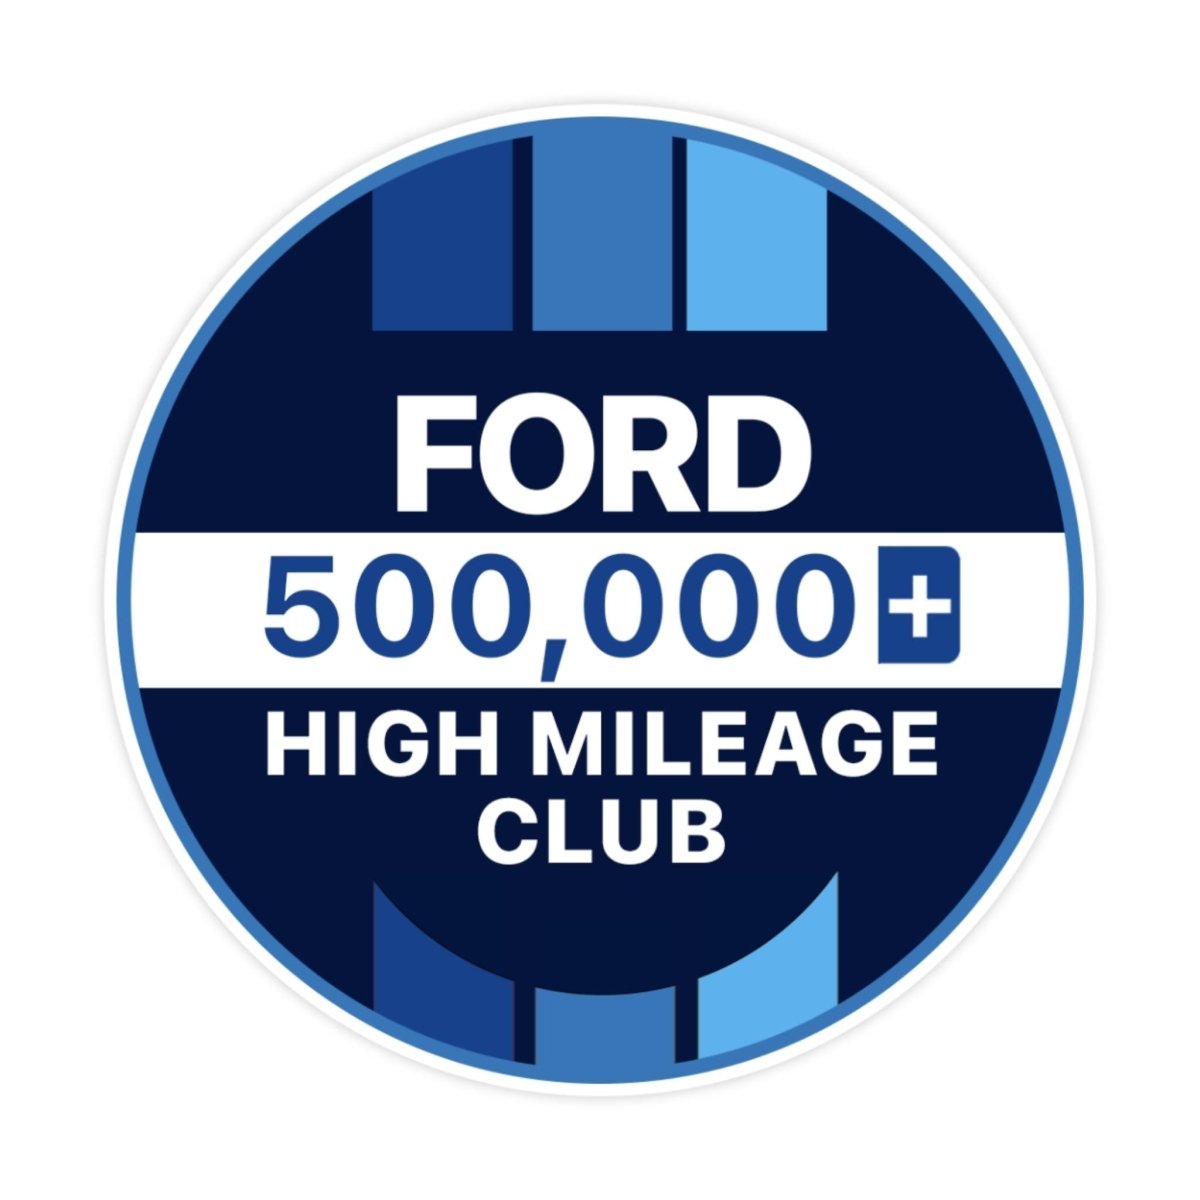 Ford 100k High Mileage Club Sticker - stickerbullFord 100k High Mileage Club StickerRetail StickerstickerbullstickerbullTaylor_Ford500k500kFord 100k High Mileage Club Sticker